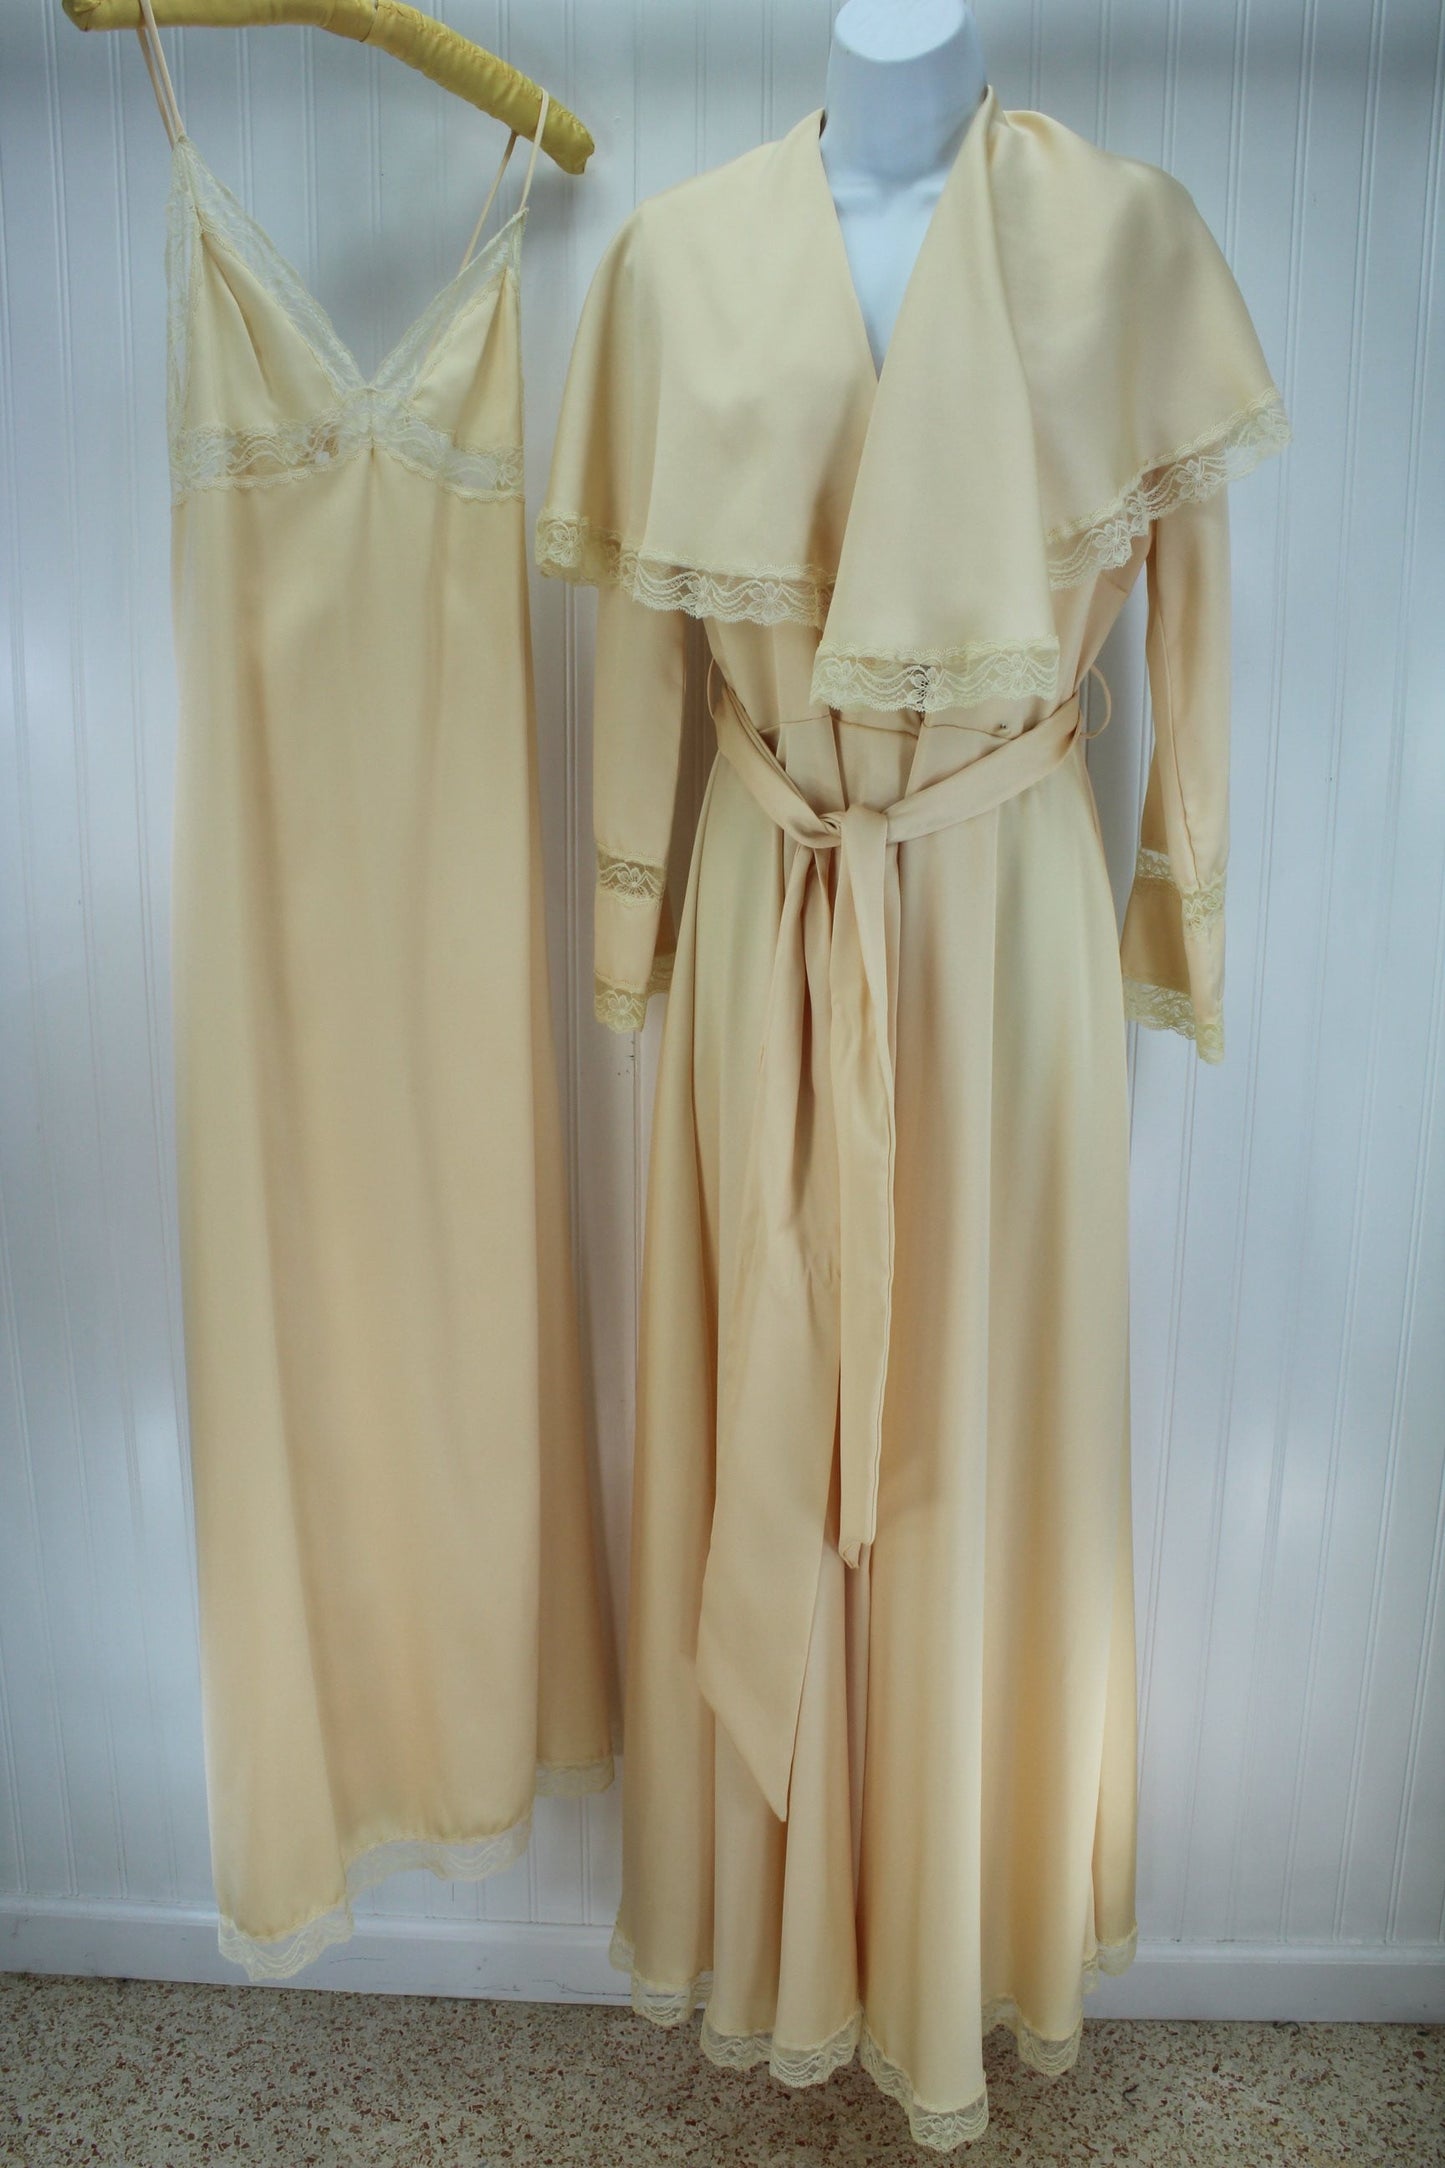 QUINTANNA Gown Peignoir Set  Nude Matching Lace Exquisite Trousseau Size M